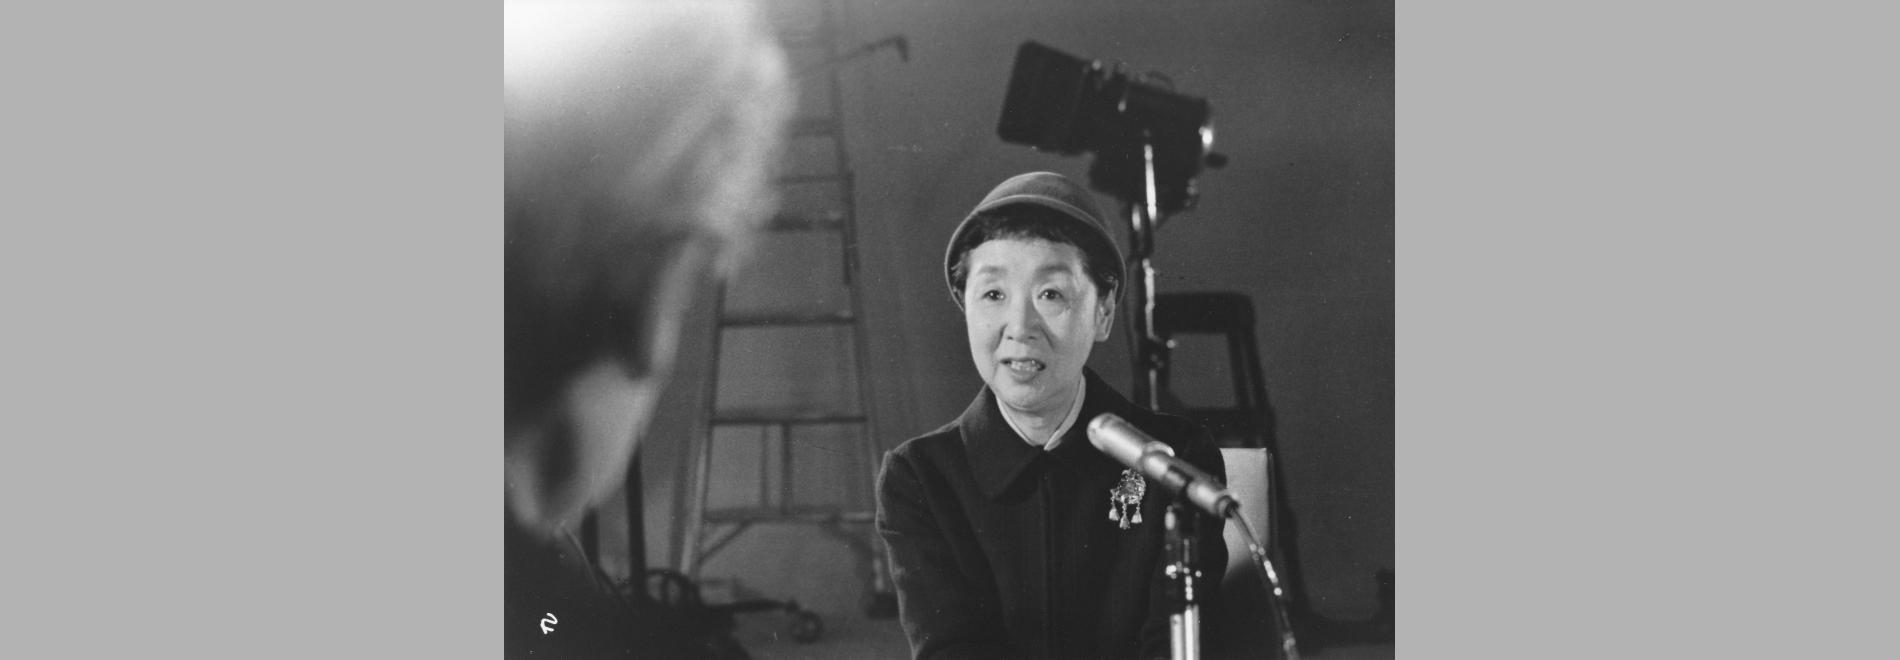 Aru eiga kantoku no shogai / Kenji Mizoguchi, la vida d’un cineasta (Kaneto Shindô, 1975)